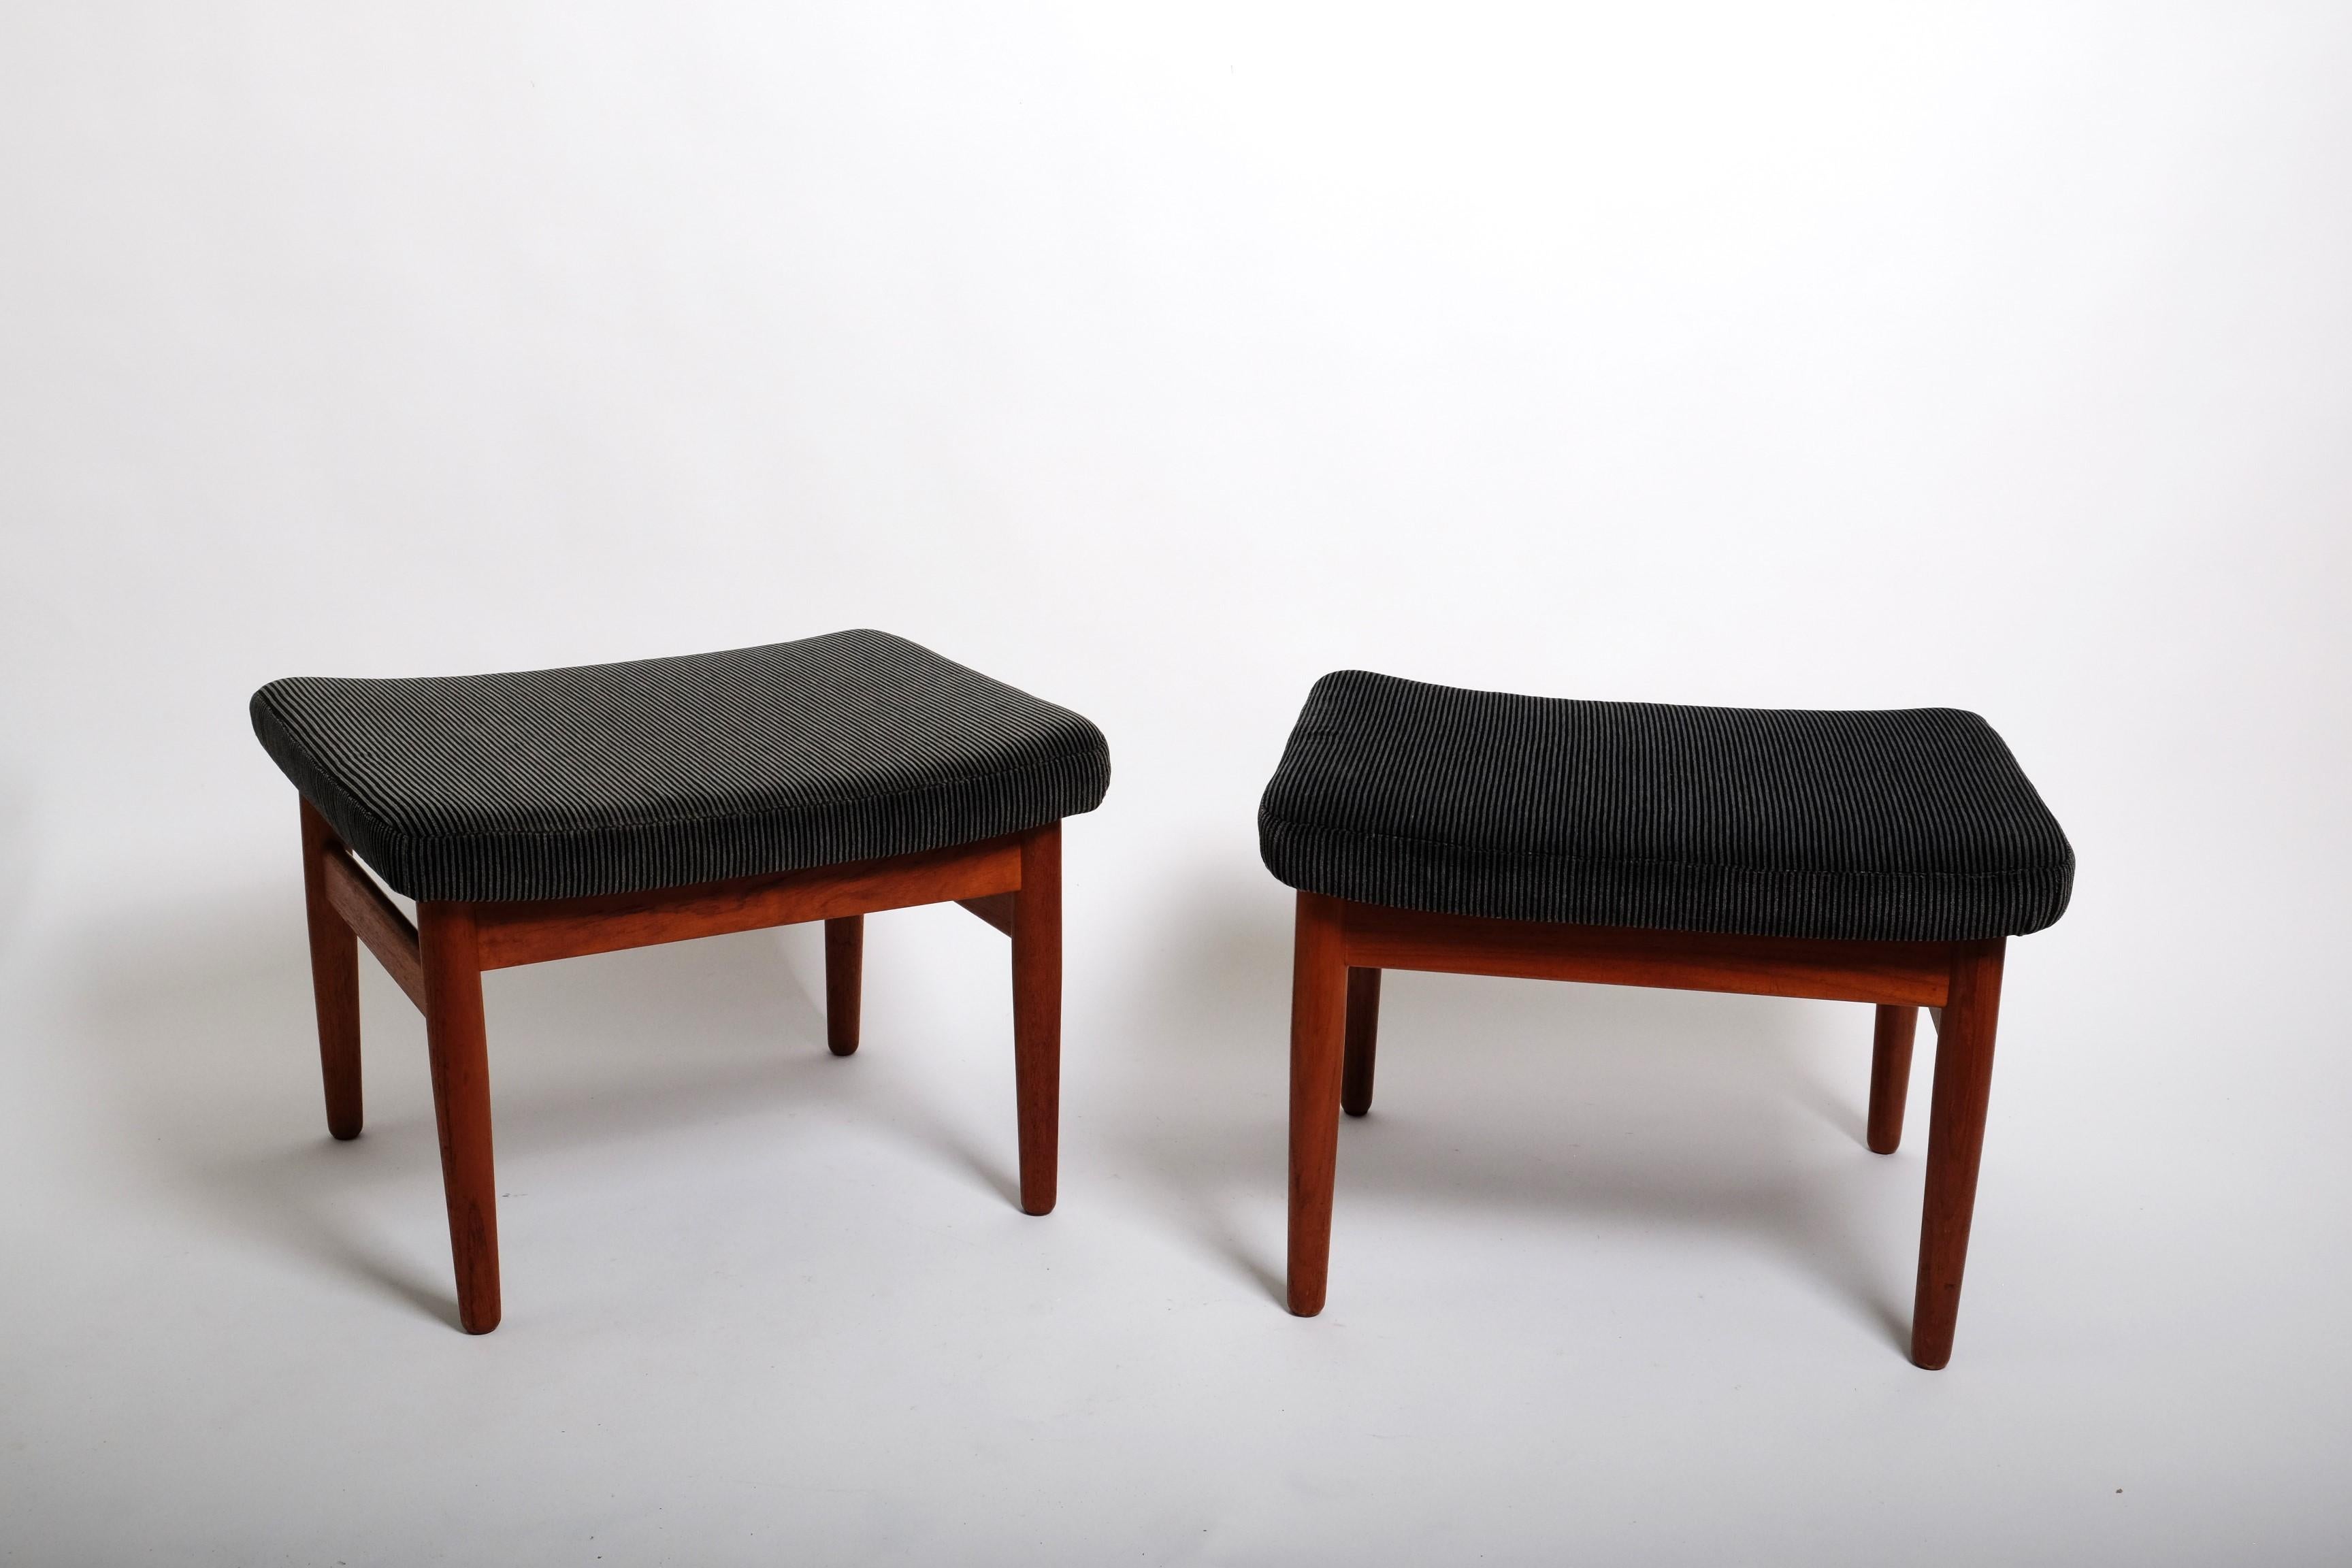 Zwei sehr schöne Hocker, entworfen von Arne Vodder für France & Son, Dänemark 1962. Ursprünglich wurden sie als Ottomane für den verstellbaren Sessel FD164 entworfen. Sie können aber auch als eigenständige Hocker verwendet werden. 

Diese Hocker